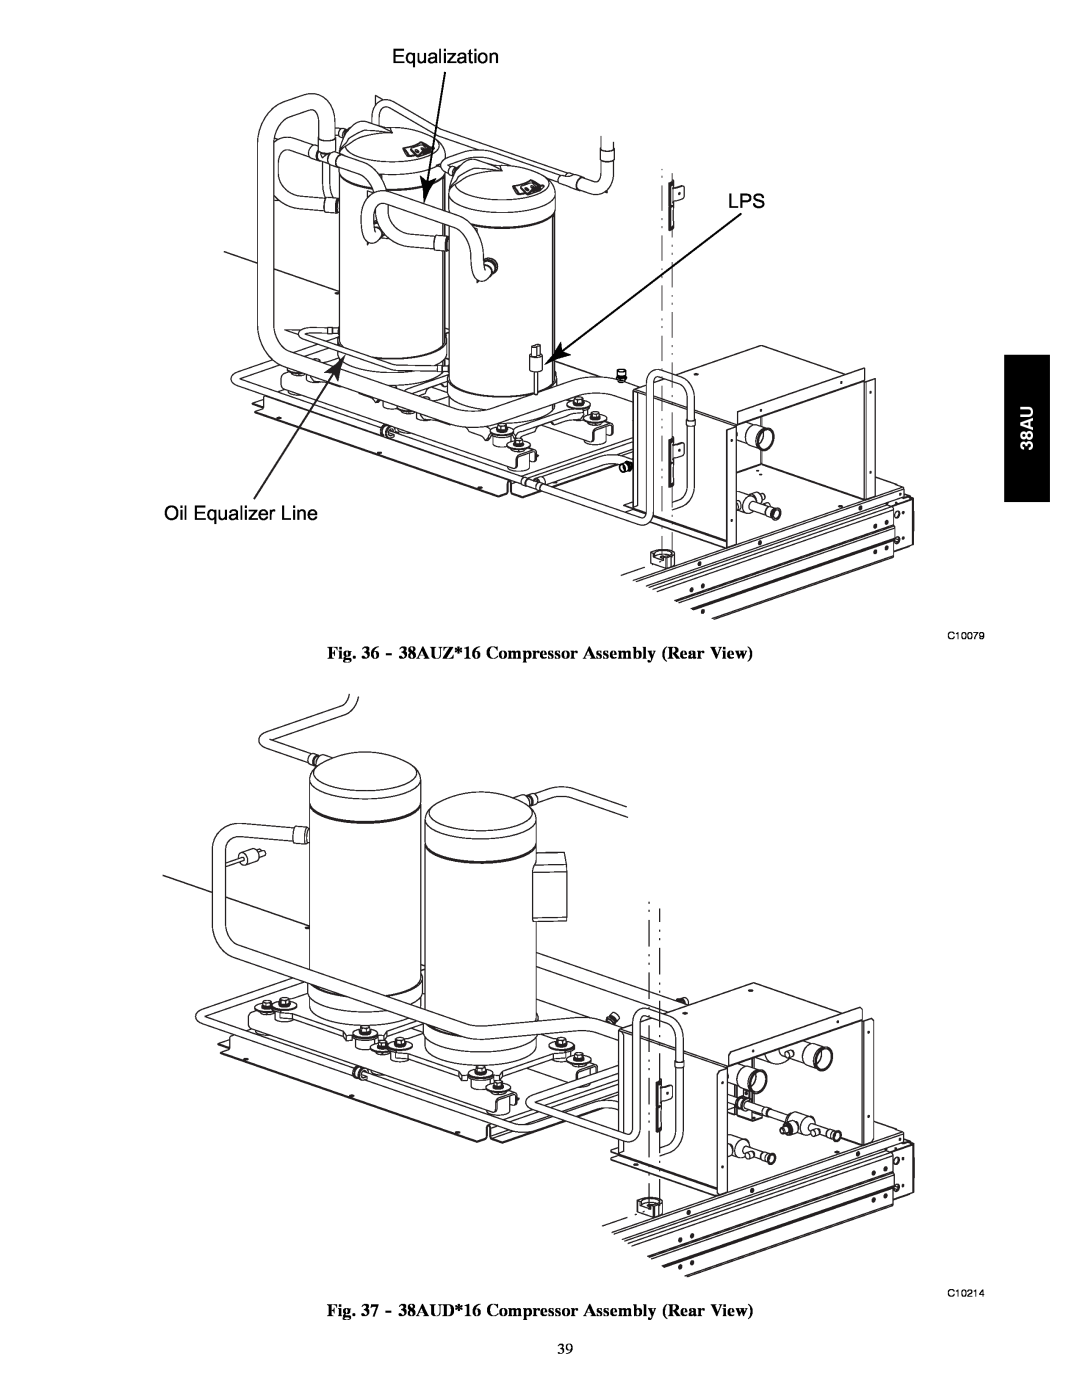 Carrier appendix Equalization LPS, Oil Equalizer Line, 38AUZ*16 Compressor Assembly Rear View, C10079, C10214 